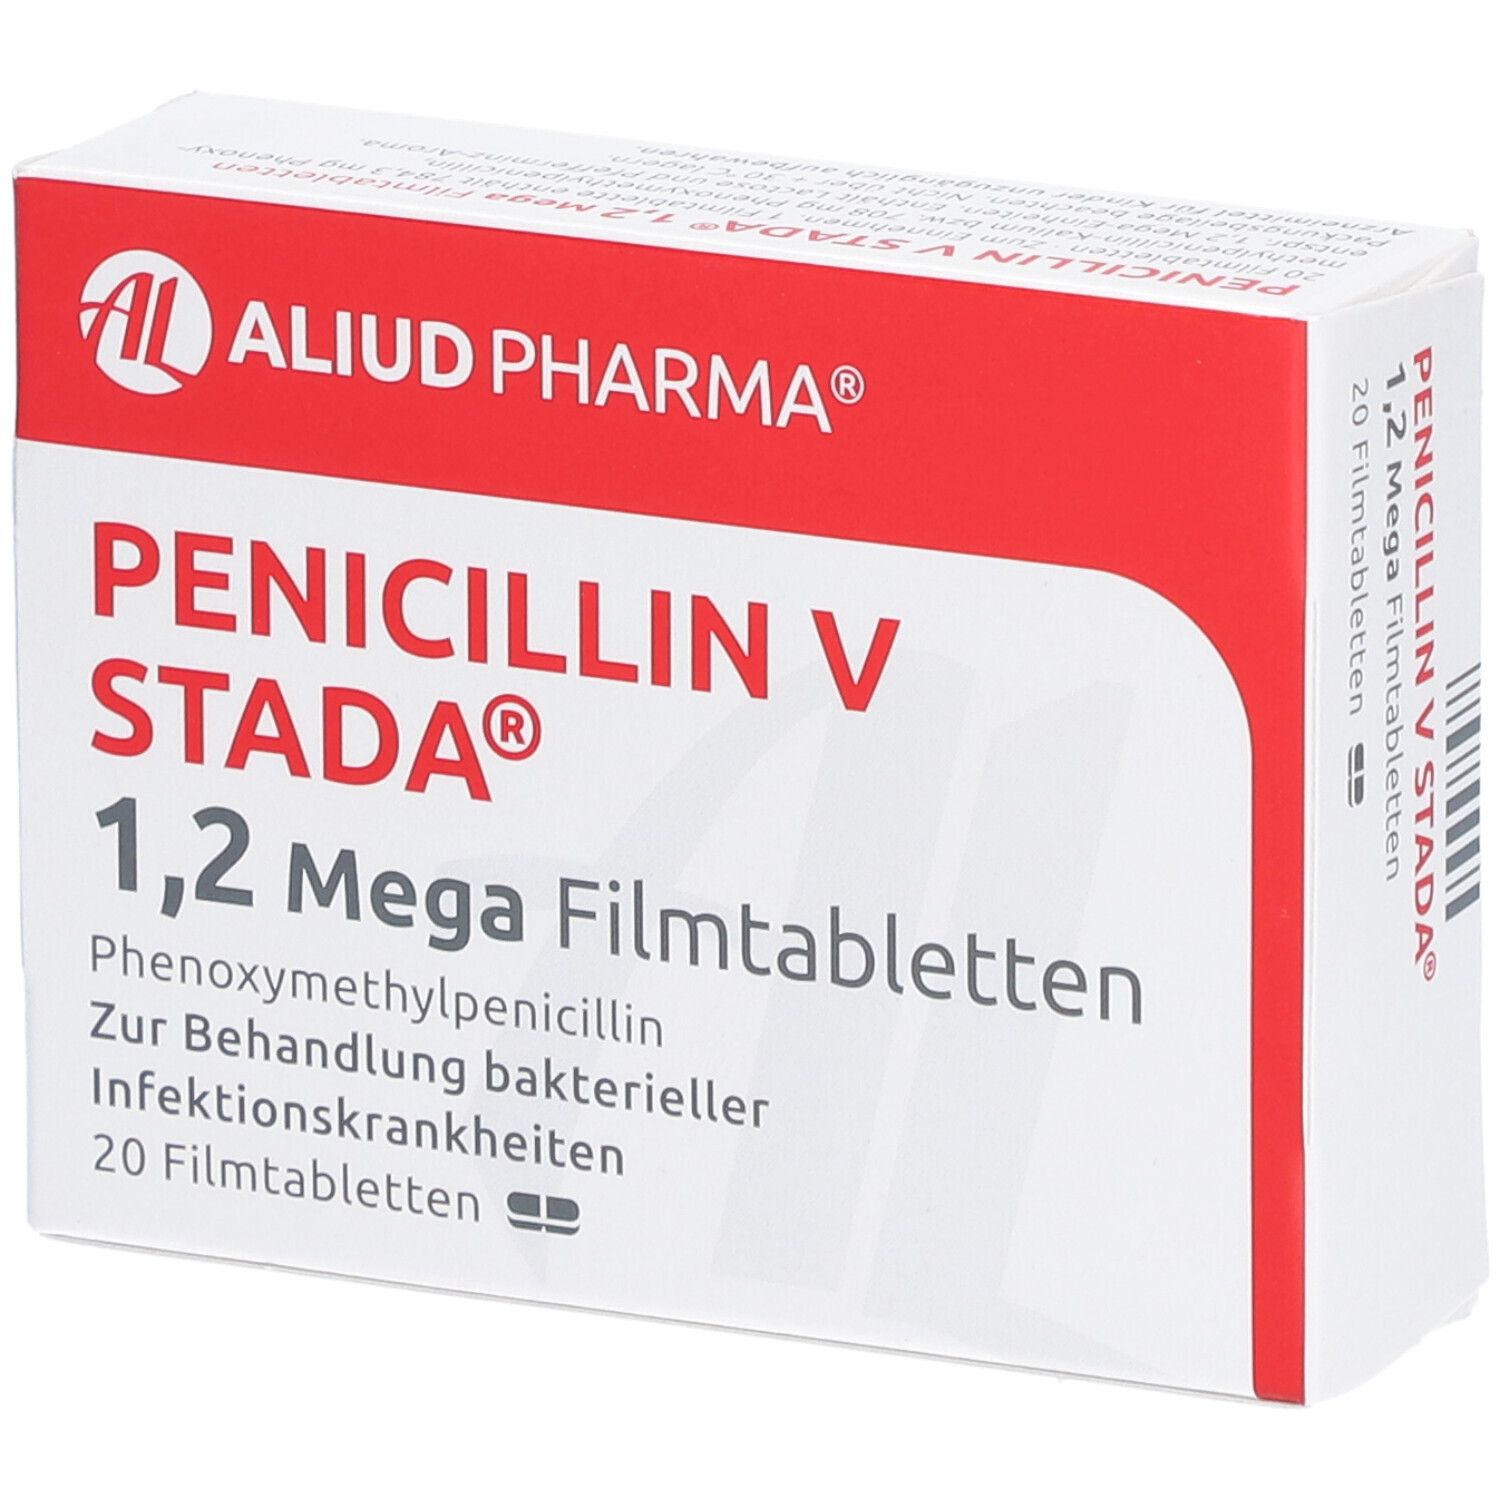 Nebenwirkungen 5 penicillin stada mega 1 v Penicillin V